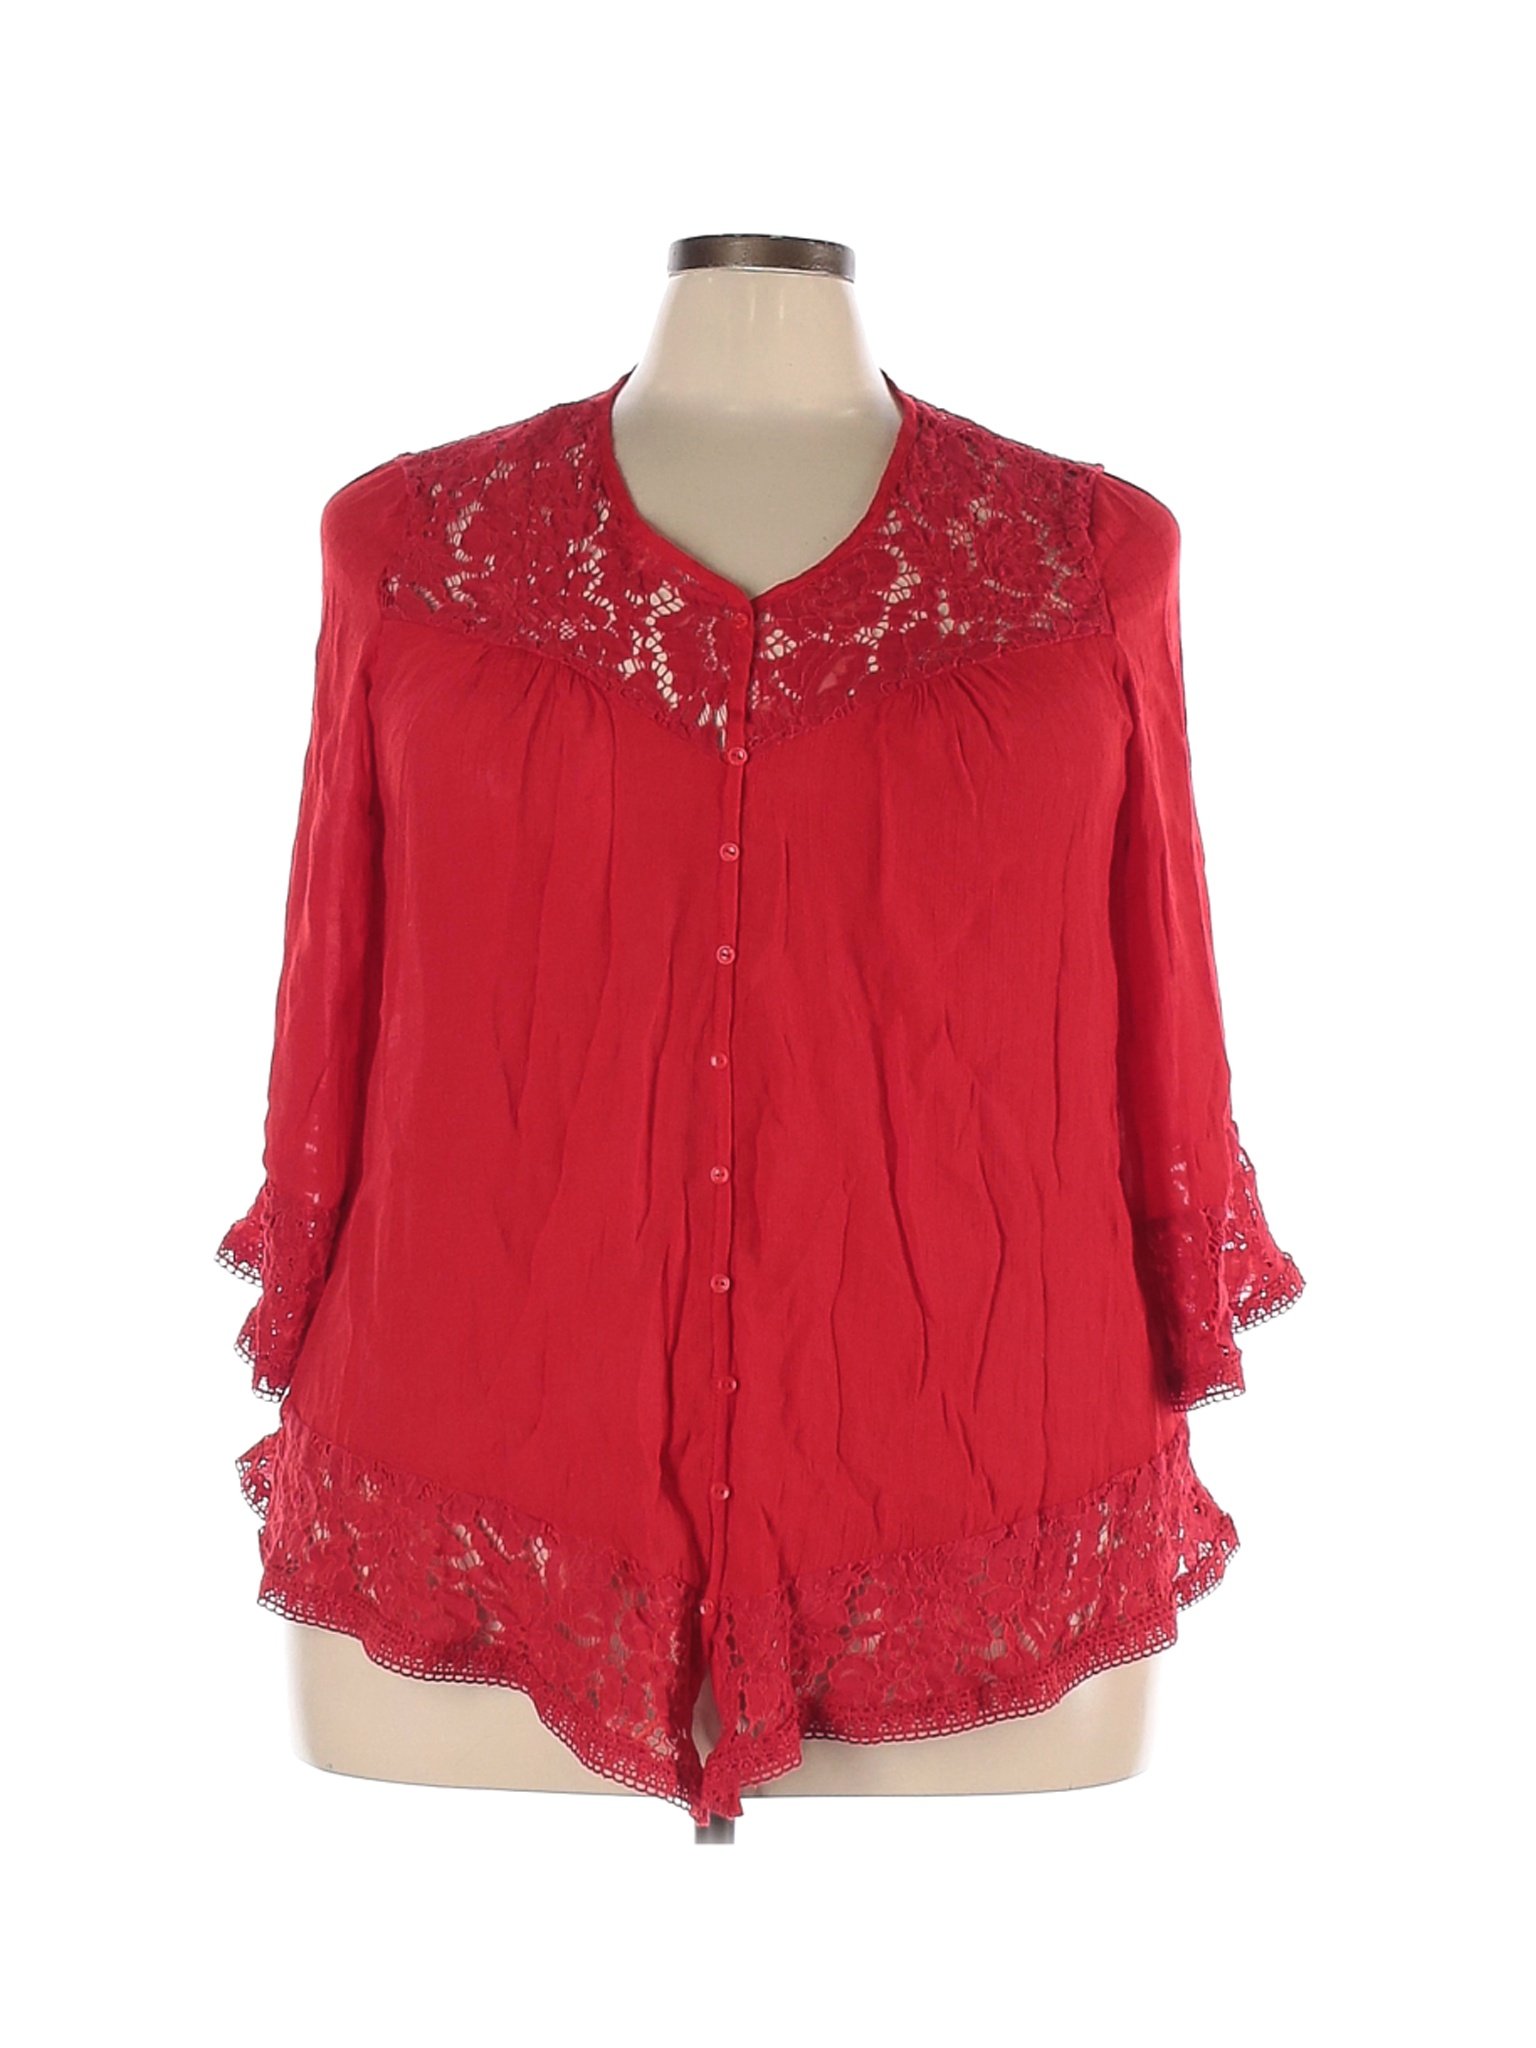 Zac & Rachel Women Red 3/4 Sleeve Blouse 2X Plus | eBay